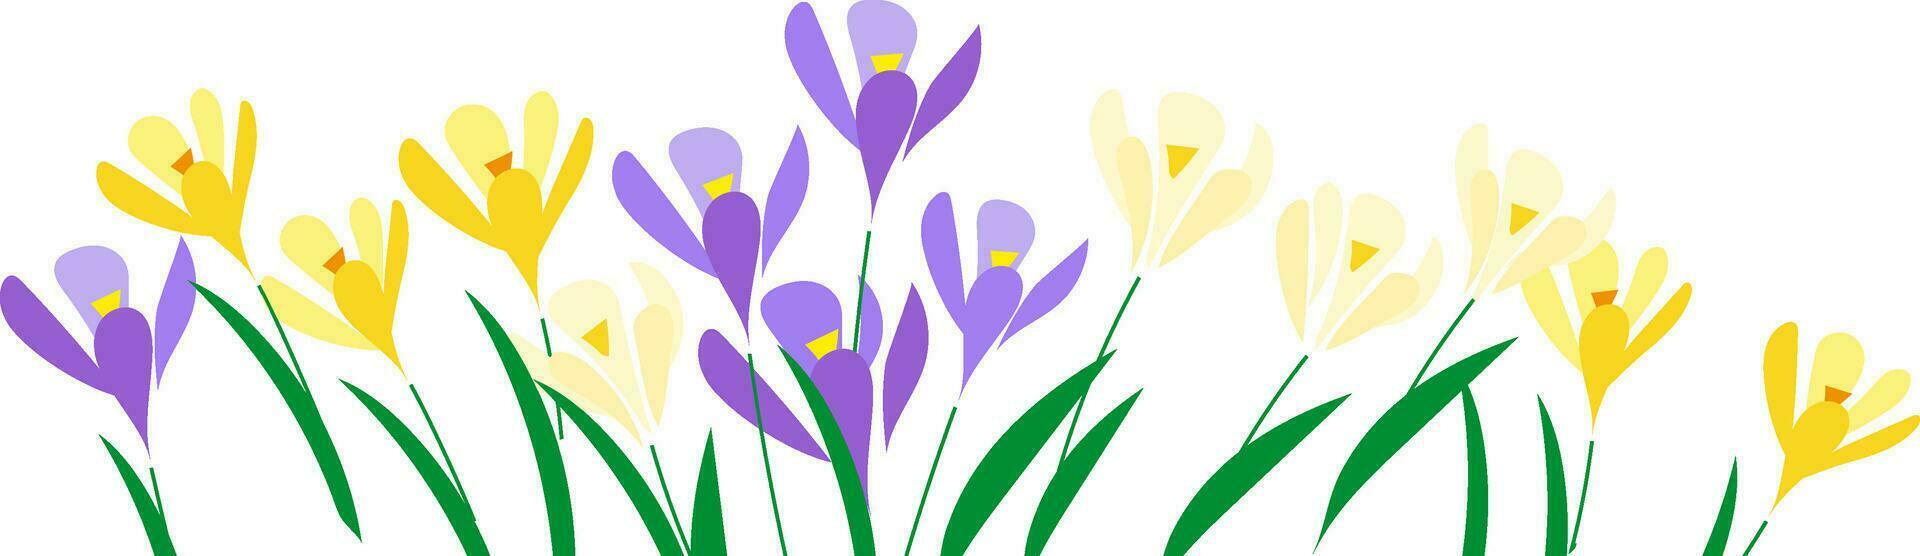 horizontaal wit banier of krokus bloemen backdrop versierd met veelkleurig bloeiend bloemen en bladeren grens vector